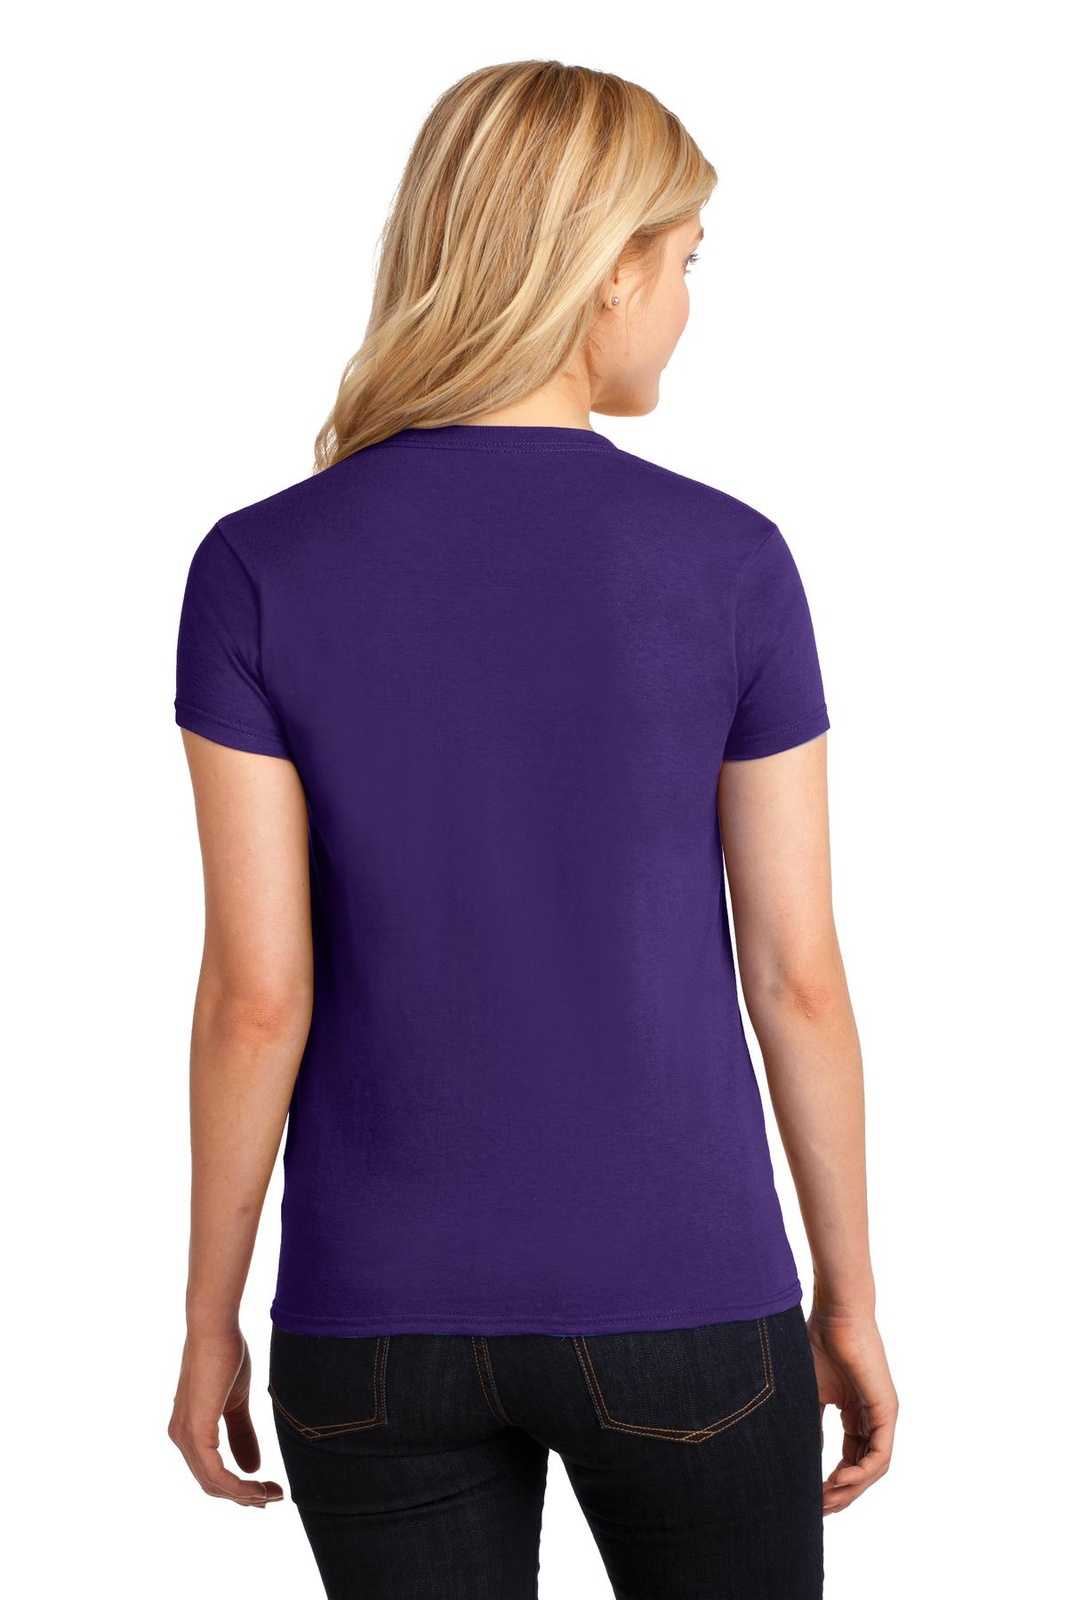 Gildan 5000L Ladies Heavy Cotton 100% Cotton T-Shirt - Purple - HIT a Double